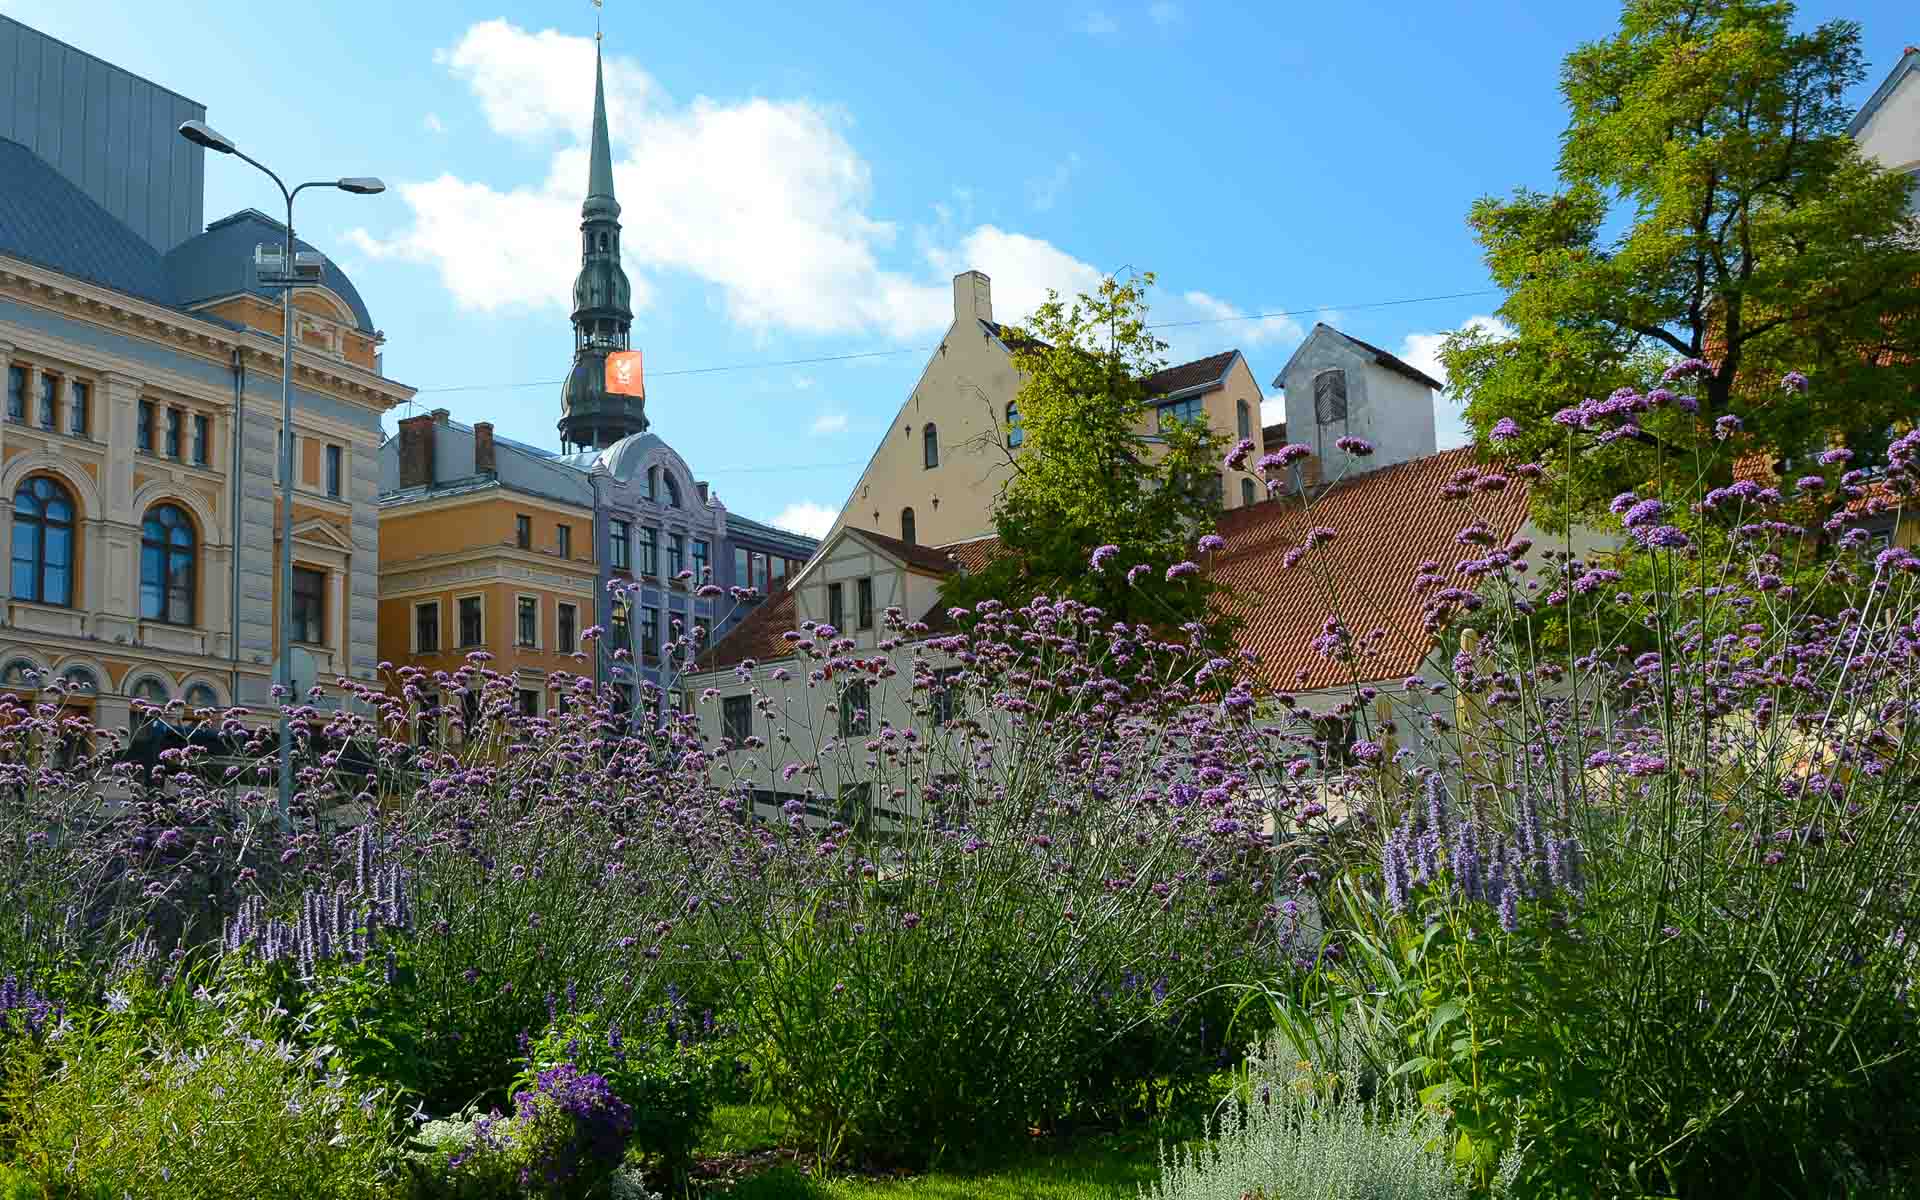 Hinter lila Blumen verstecken sich wunderschöne Häuserfassaden im Jugendstil, sie zieren das Stadtbild Rigas in Lettland.